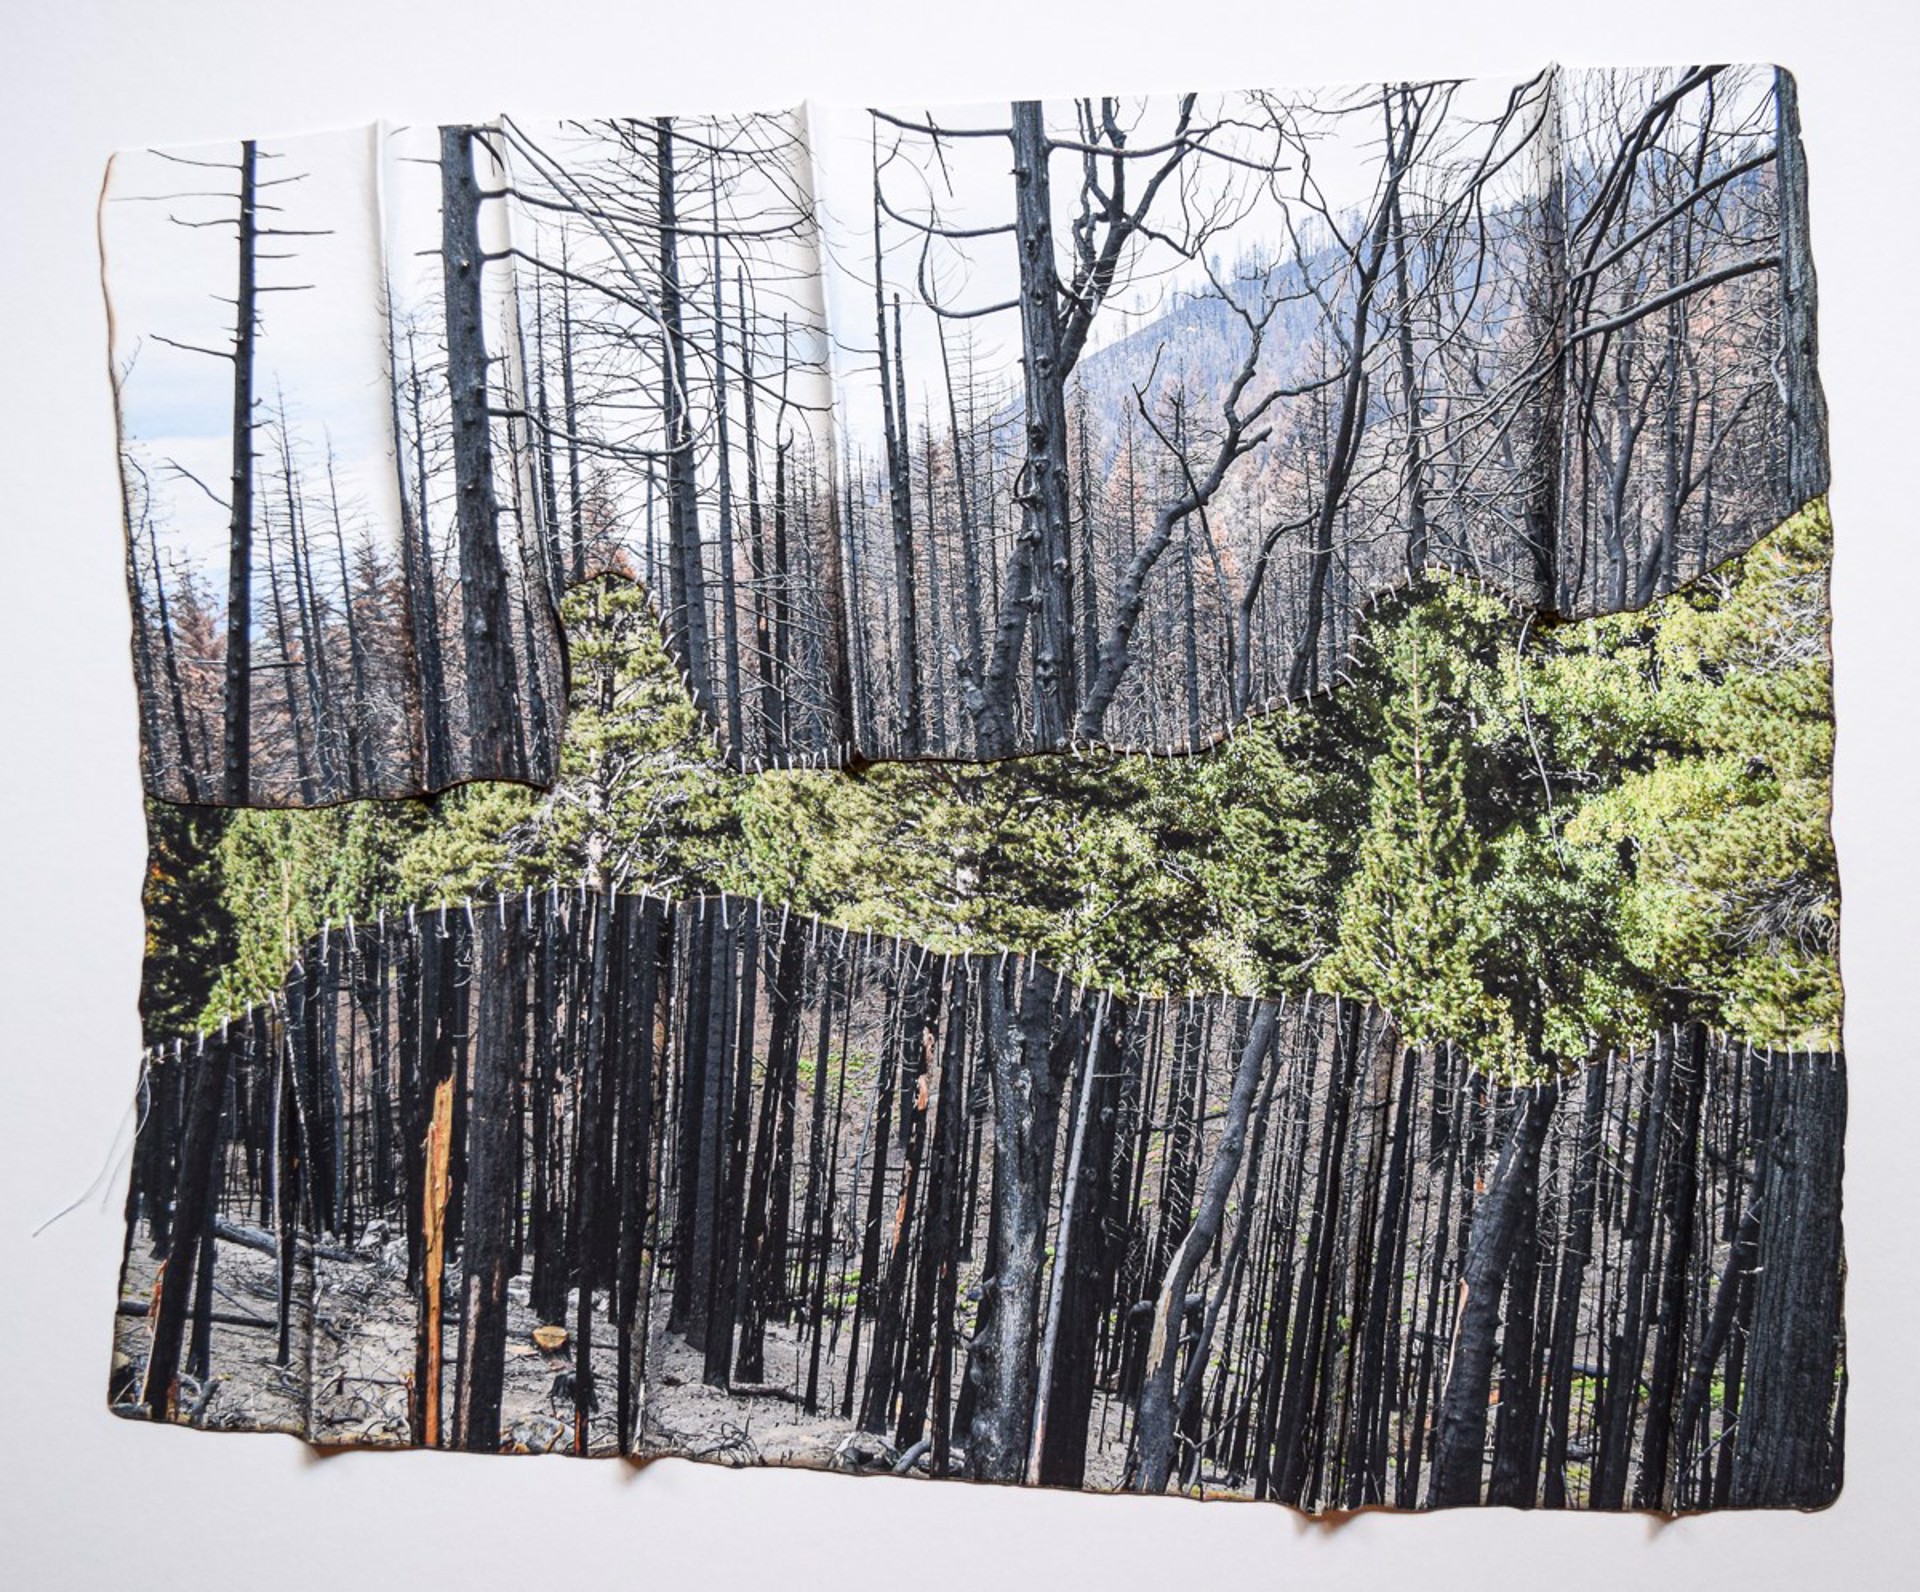 Sierra Burn Scar 2 by Debra Achen